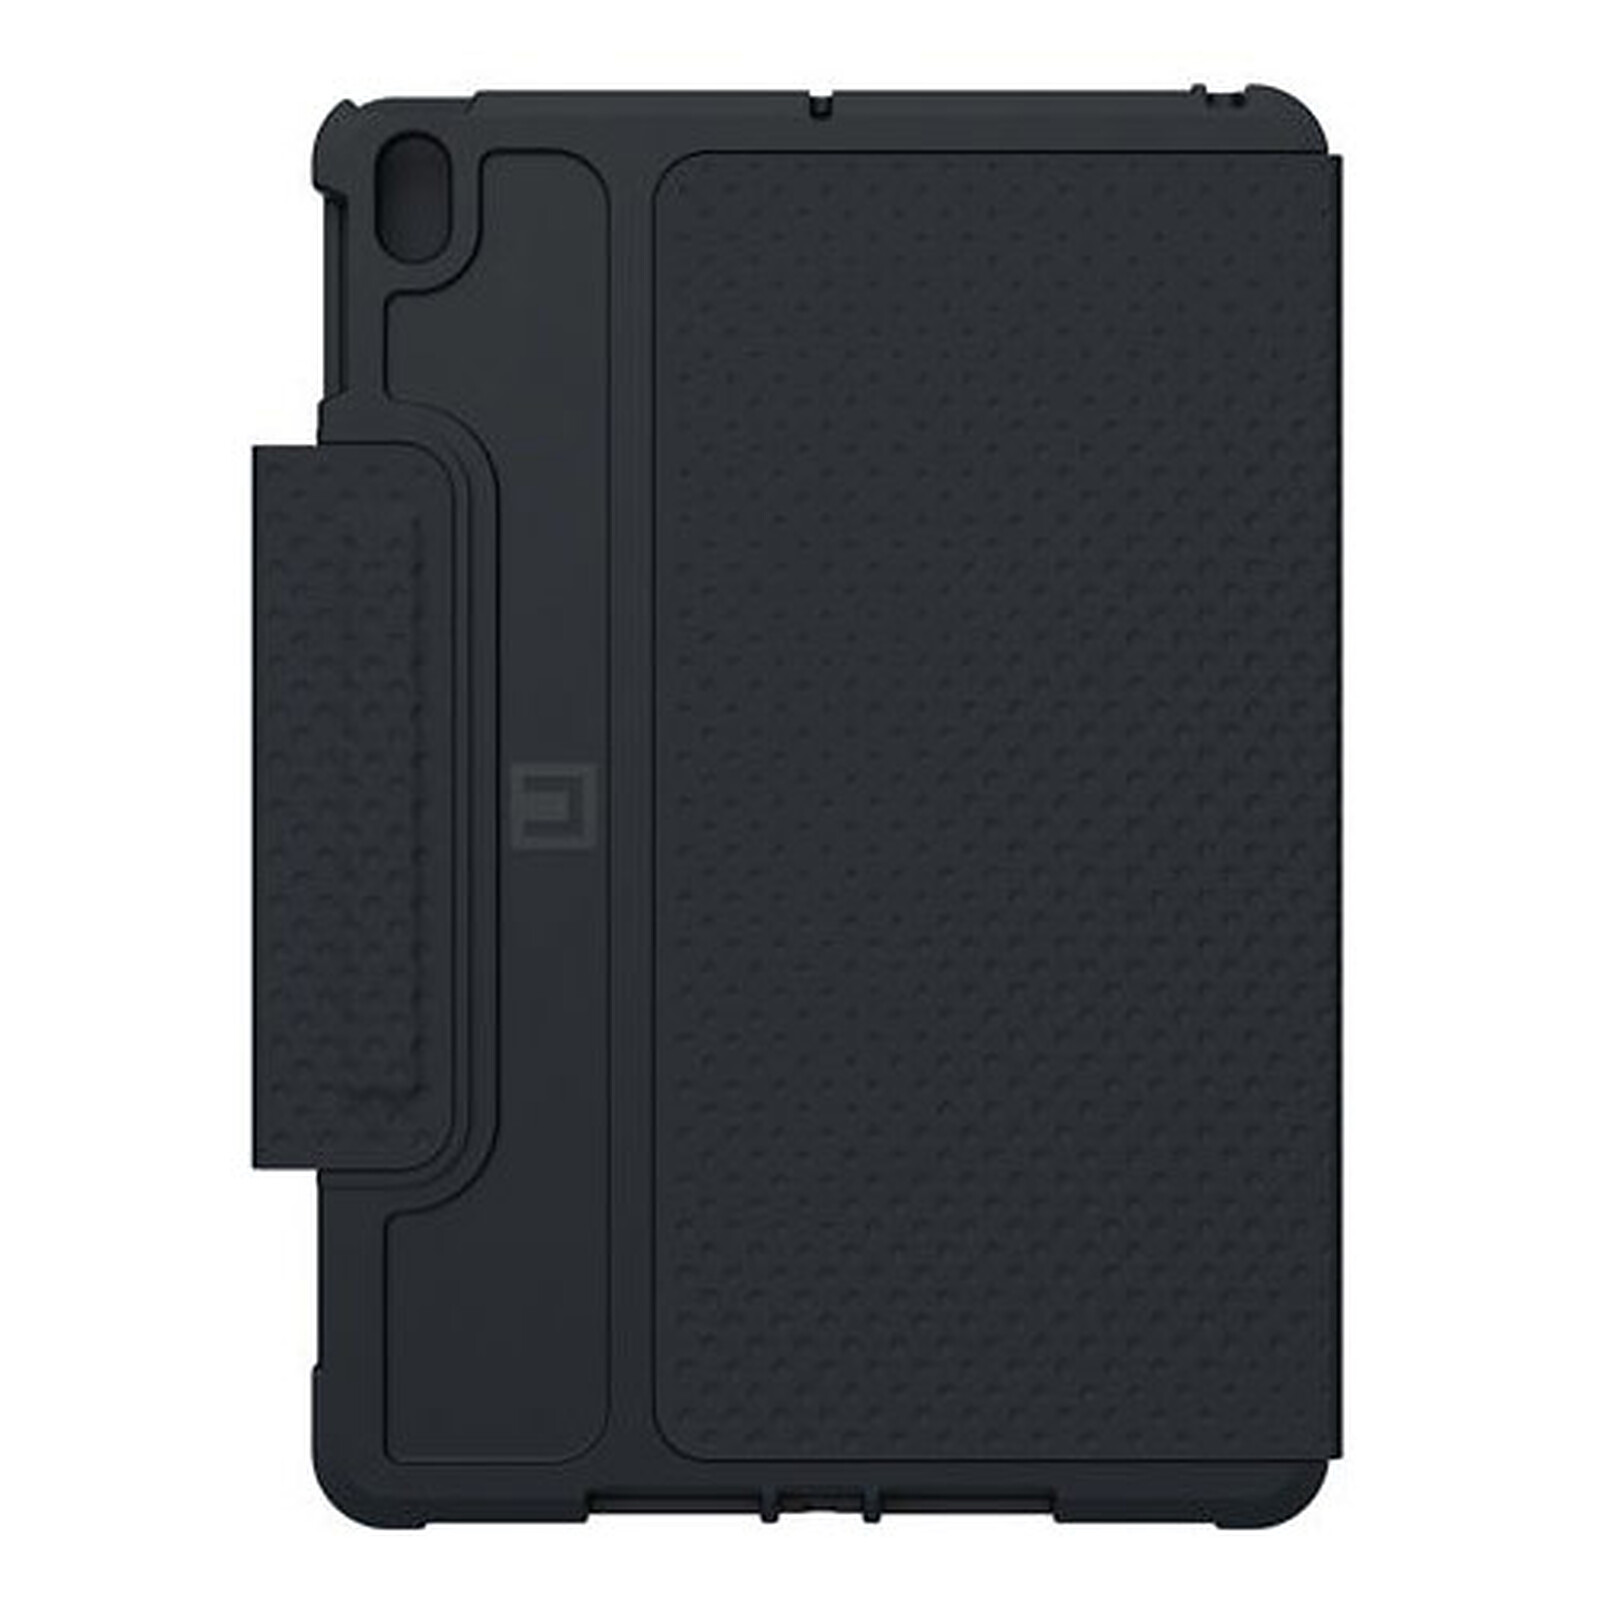 Étui smart cover pour iPad avec porte-stylet - Noir